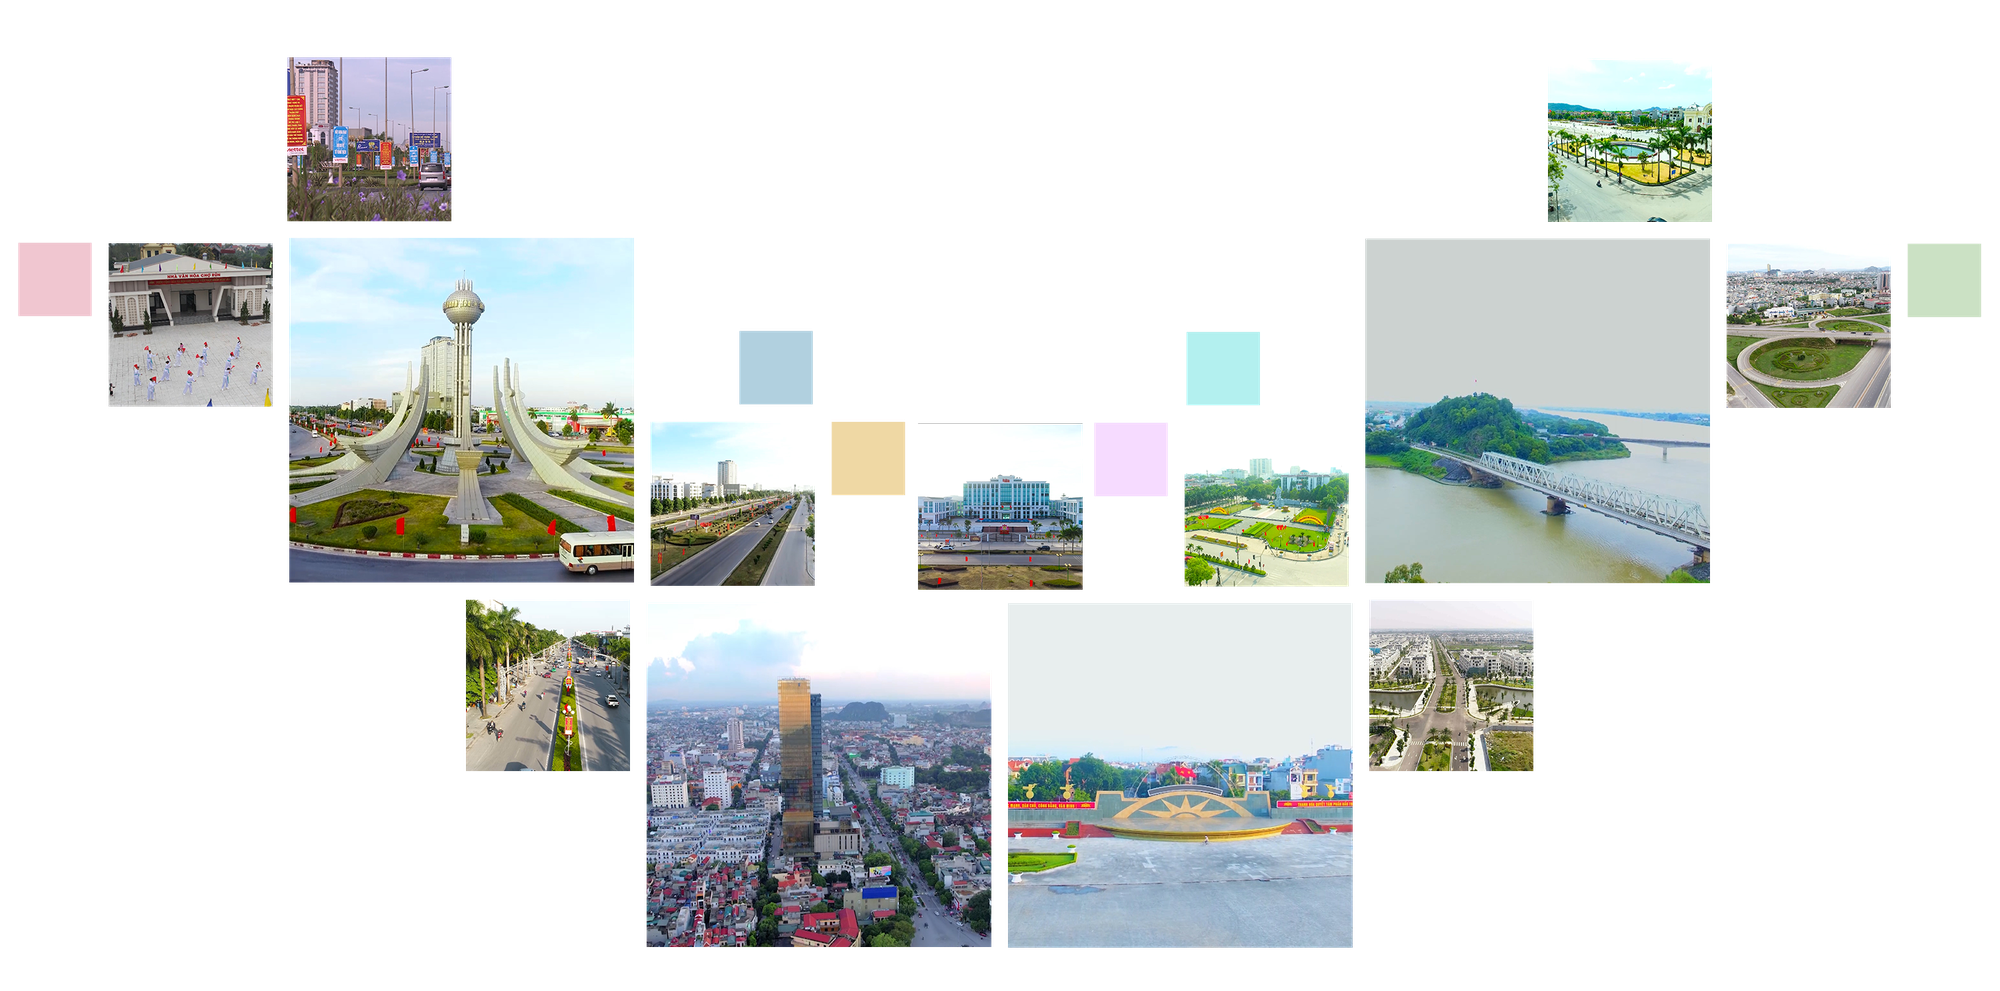 [E-Magazine] Quy hoạch chung đô thị Thanh Hóa đến năm 2040 - Cơ sở để xây dựng “Thành phố hội tụ - Kết nối phát triển” - Ảnh 7.